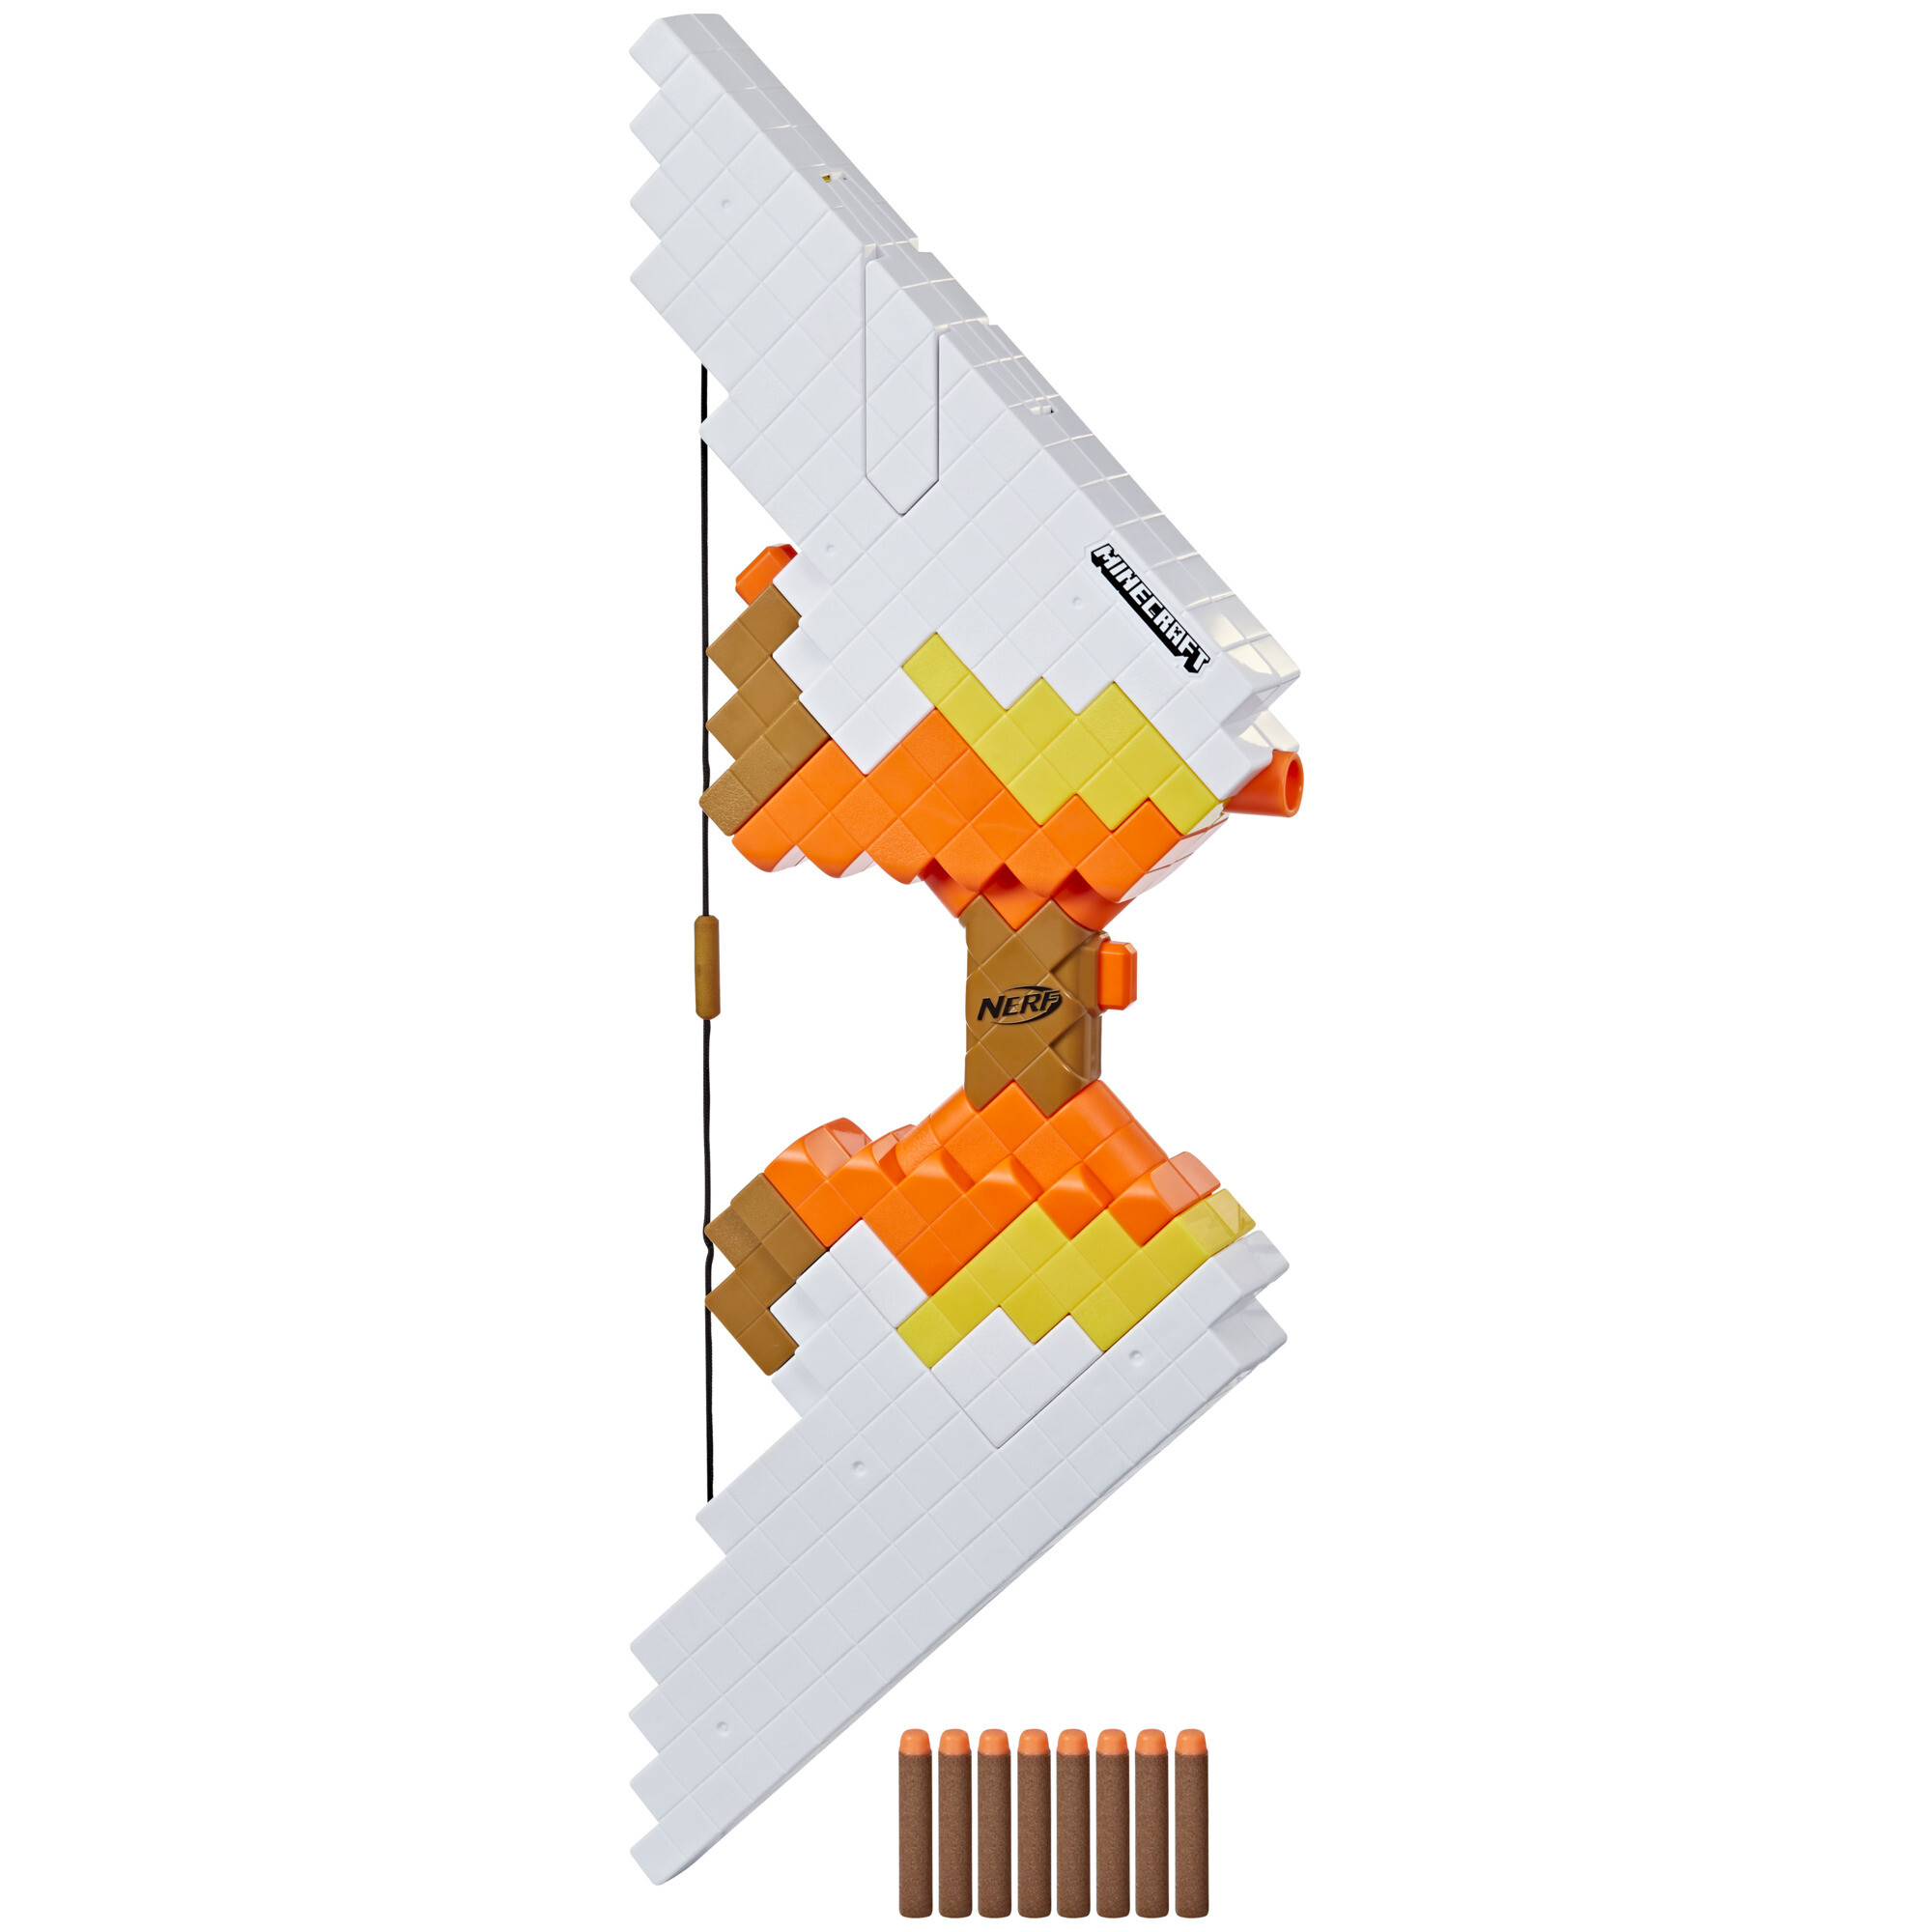 Nerf minecraft - sabrewing, arco motorizzato lancia i dardi, design ispirato al videogioco, include 8 dardi nerf elite - NERF